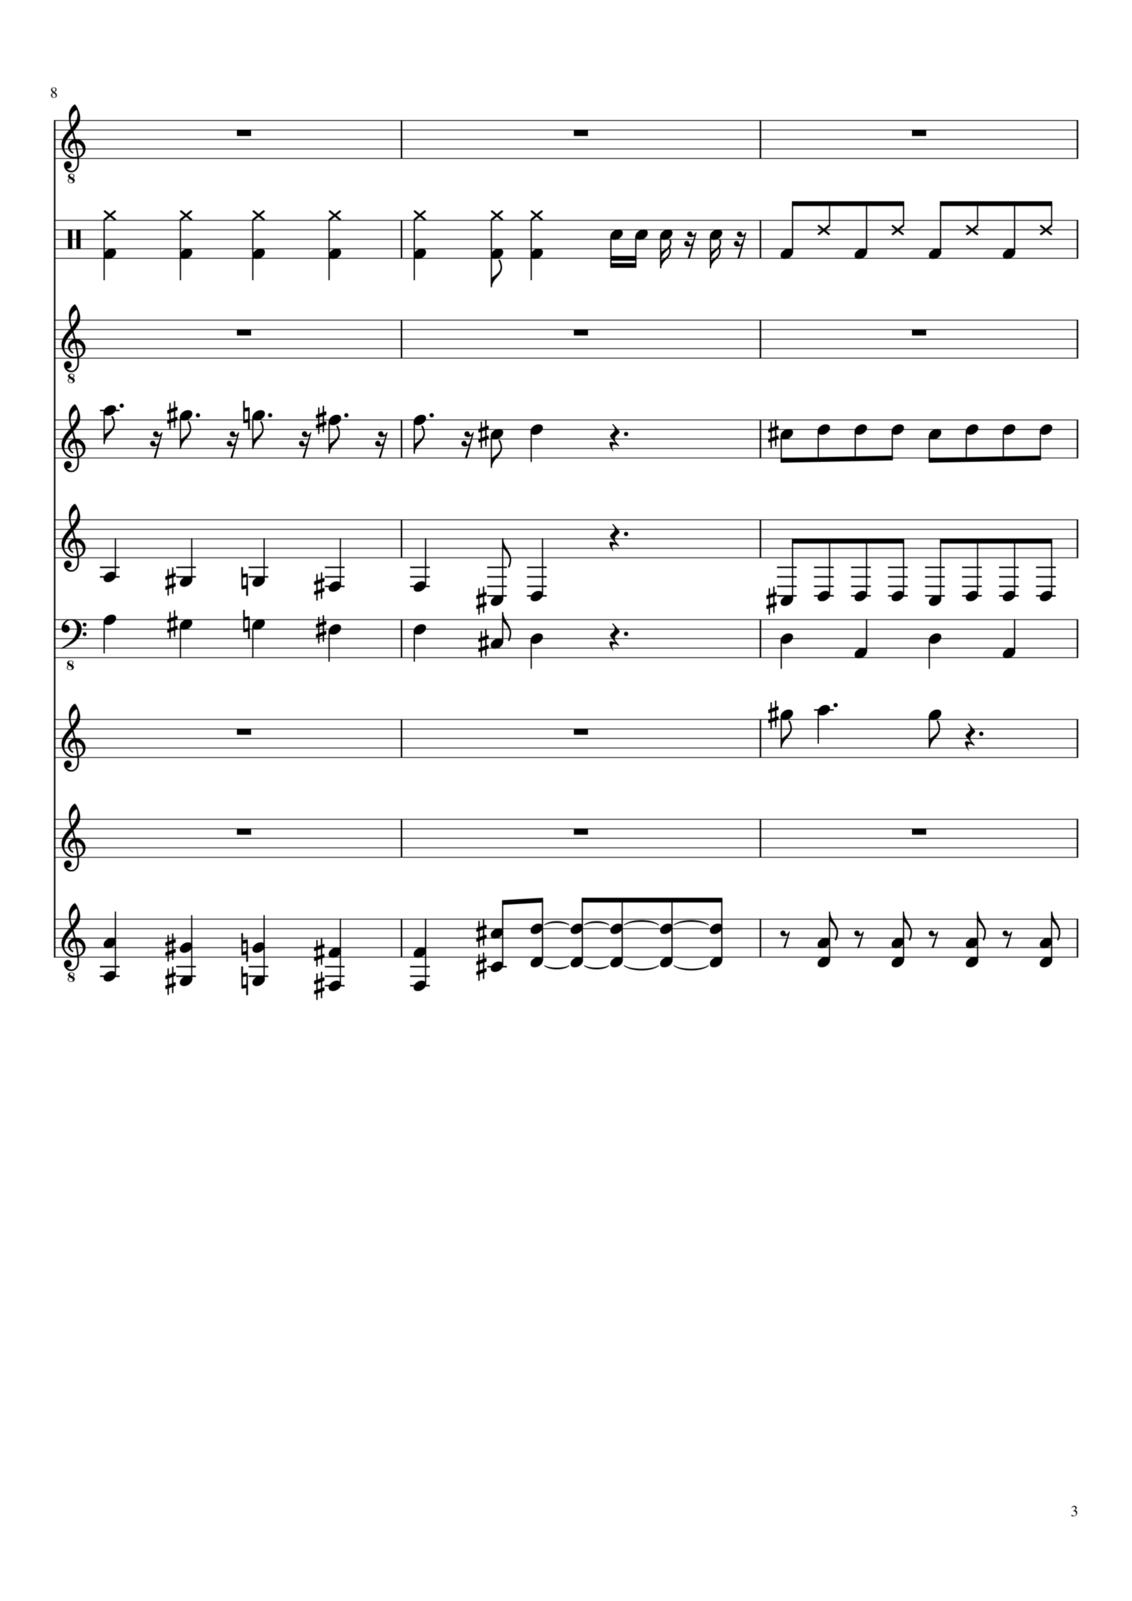 Razoralis voronyi slide, Image 1